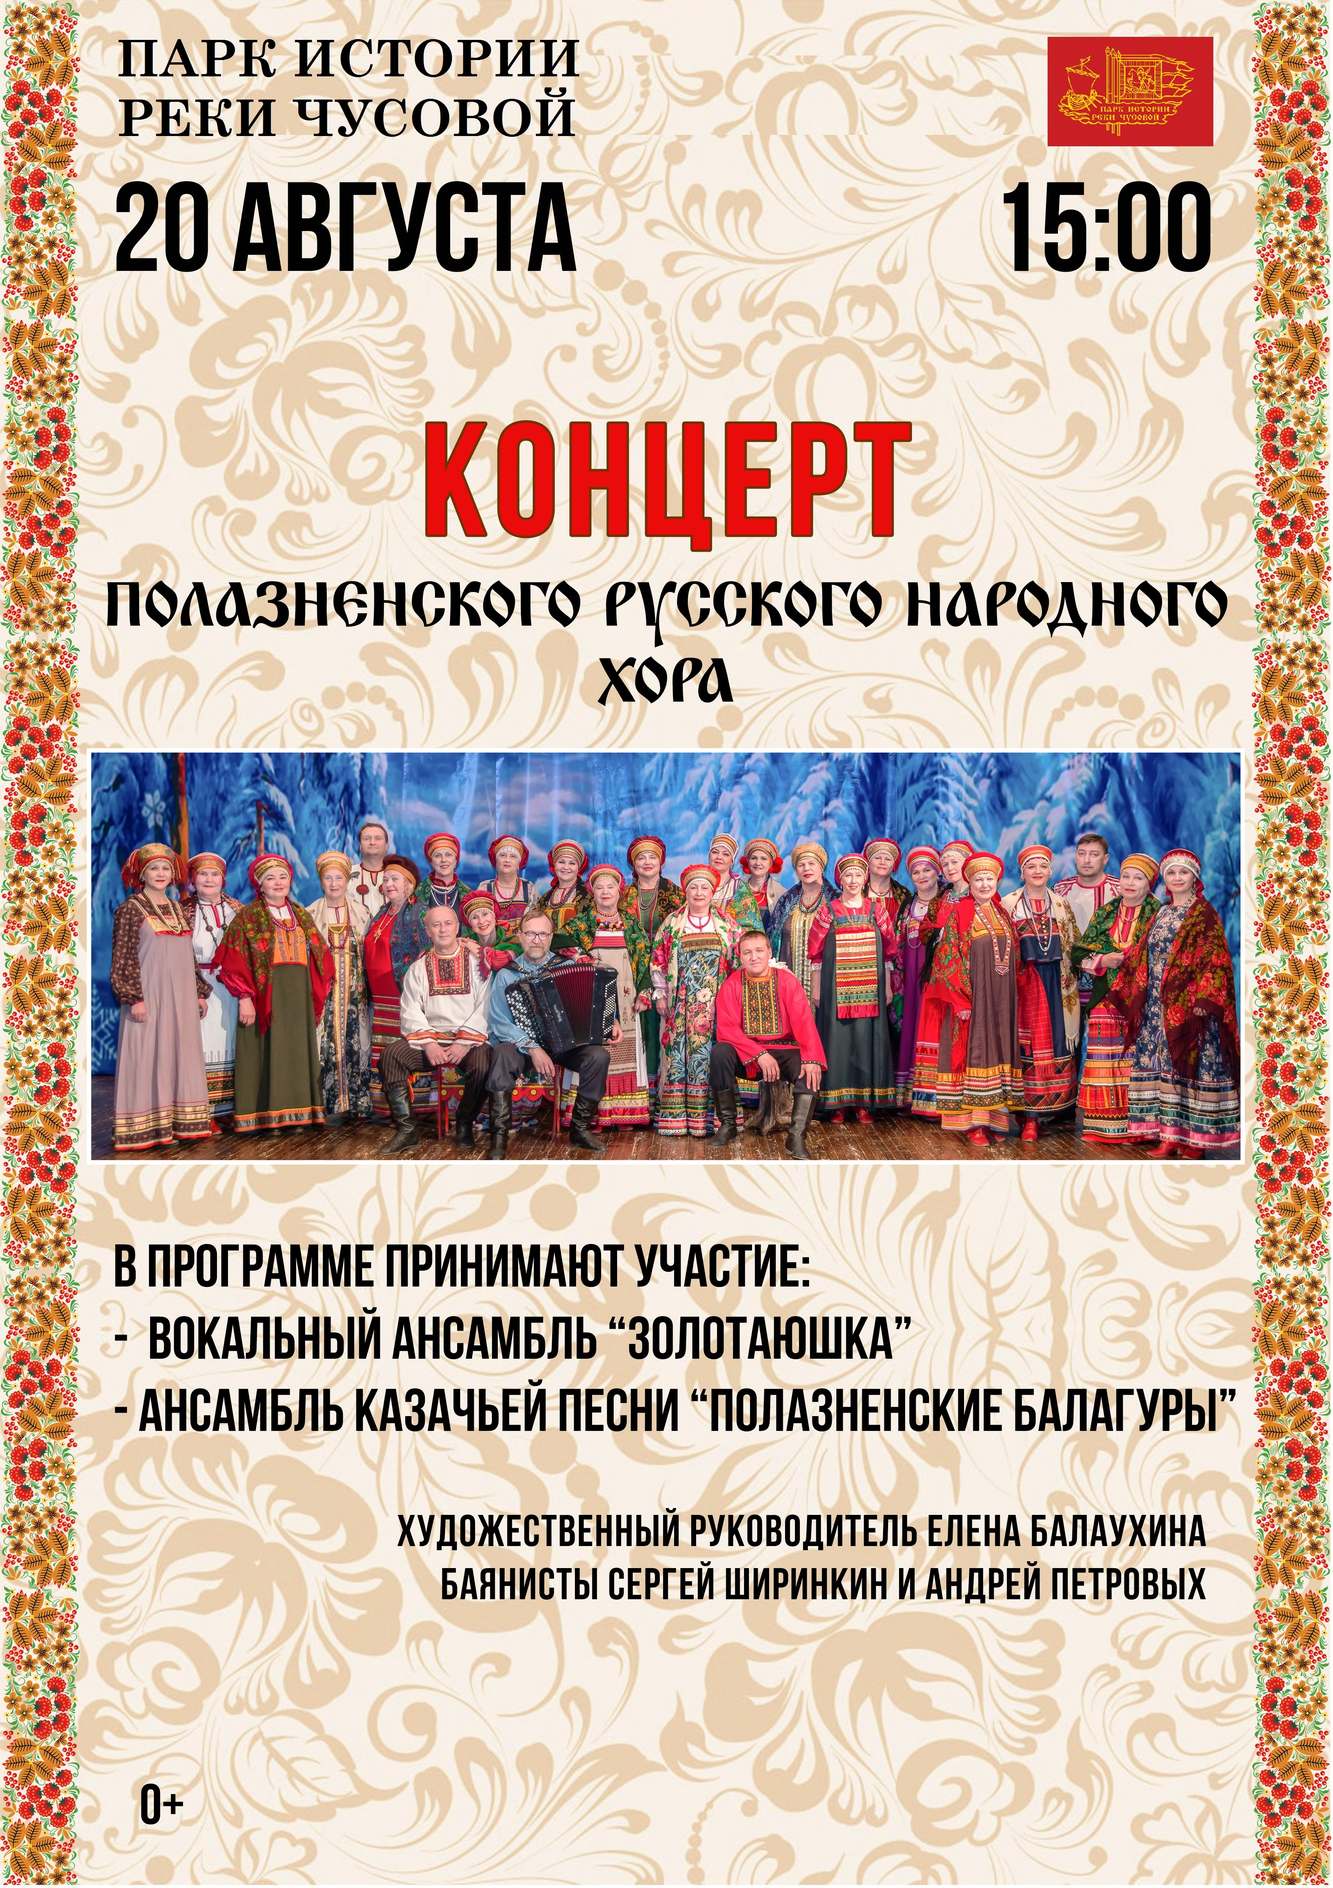 Концерт Полазненского Русского народного хора